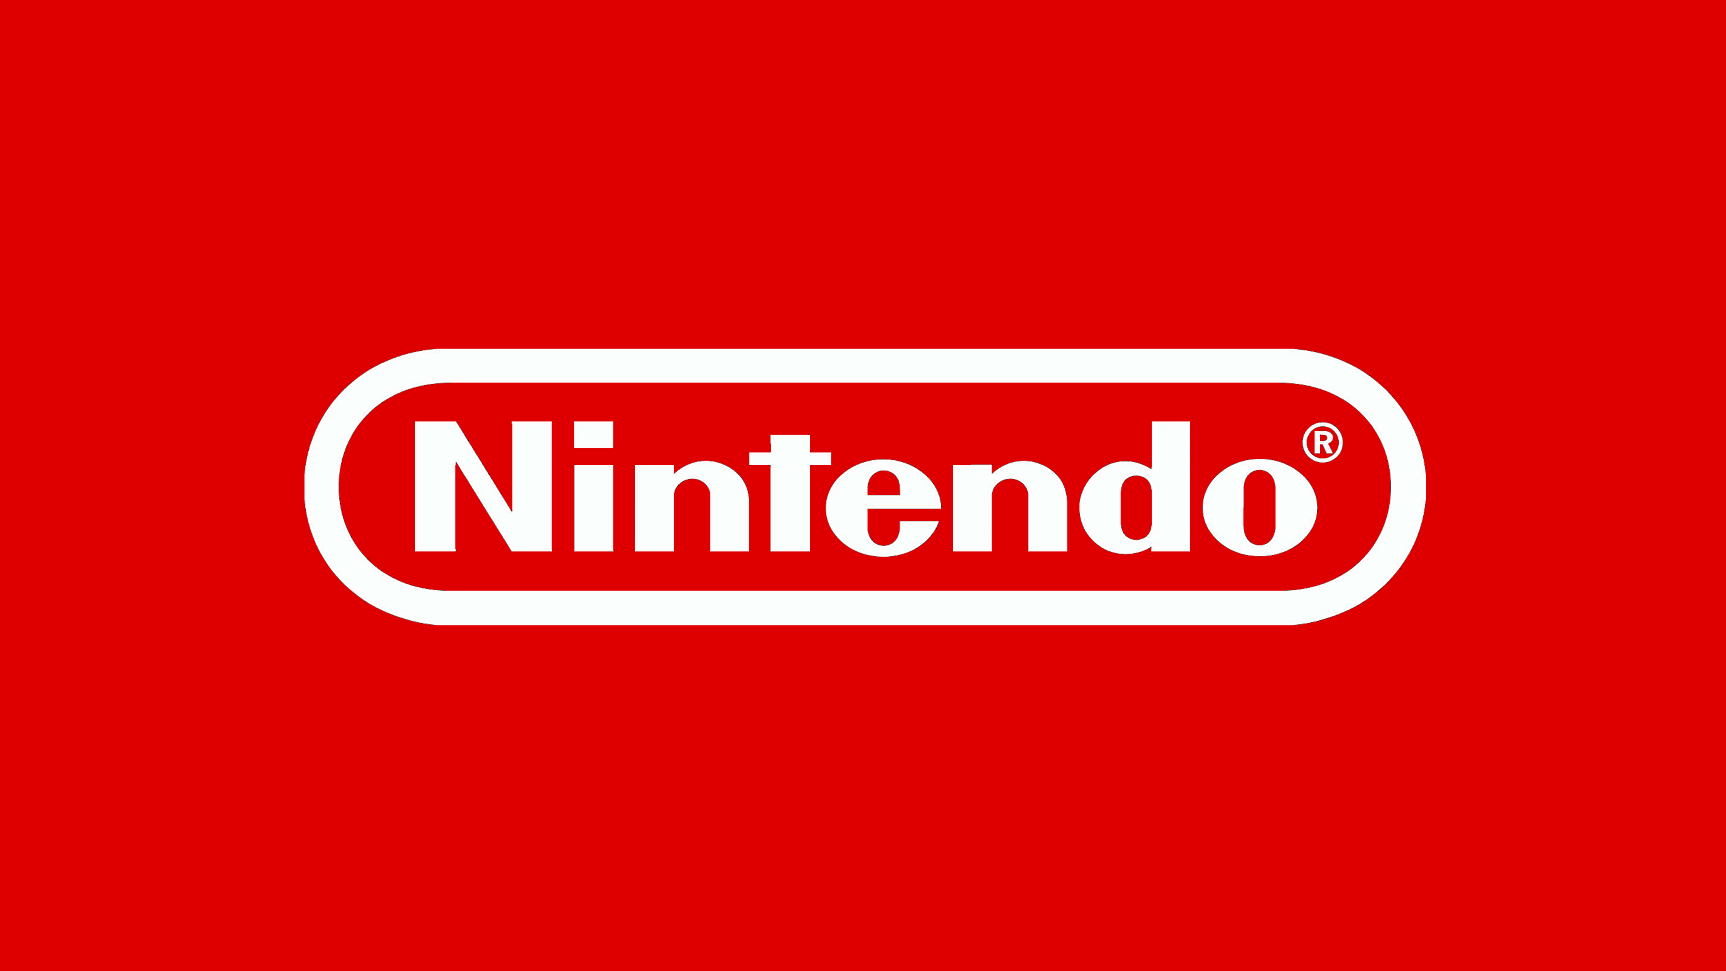 Site de ROMs da Nintendo se defende de processo de US$ 15 milhões